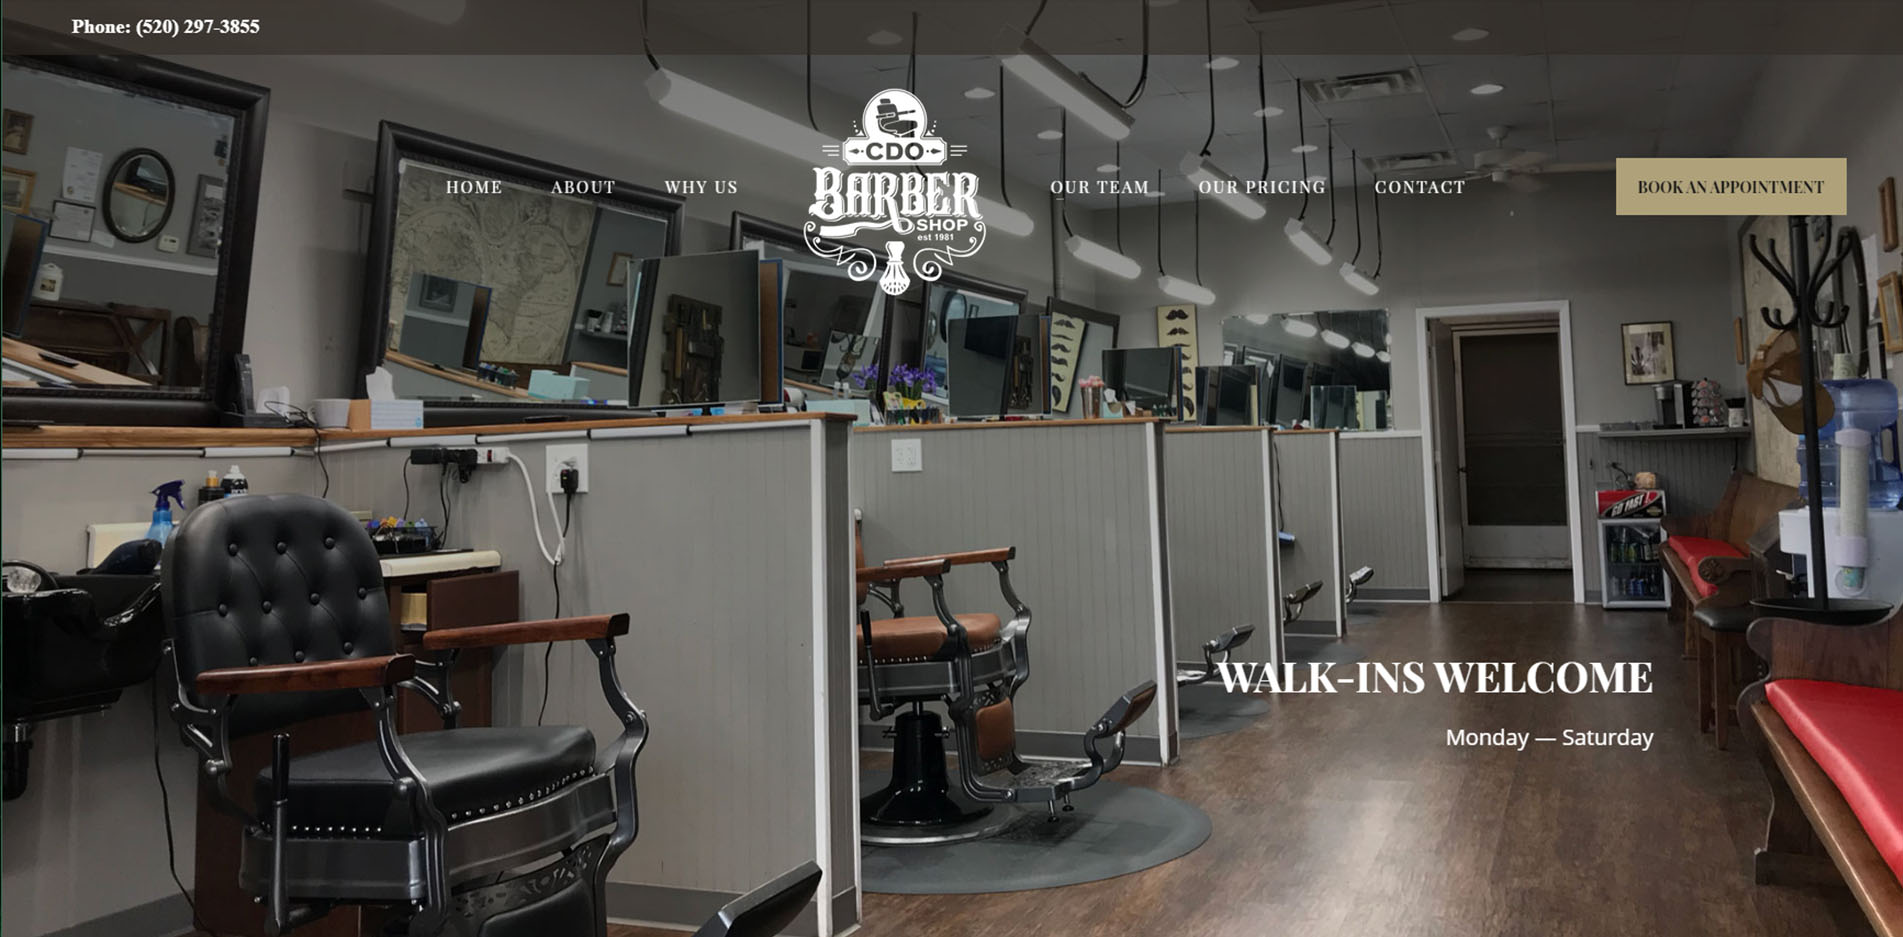 Barber Shop Website Design #4